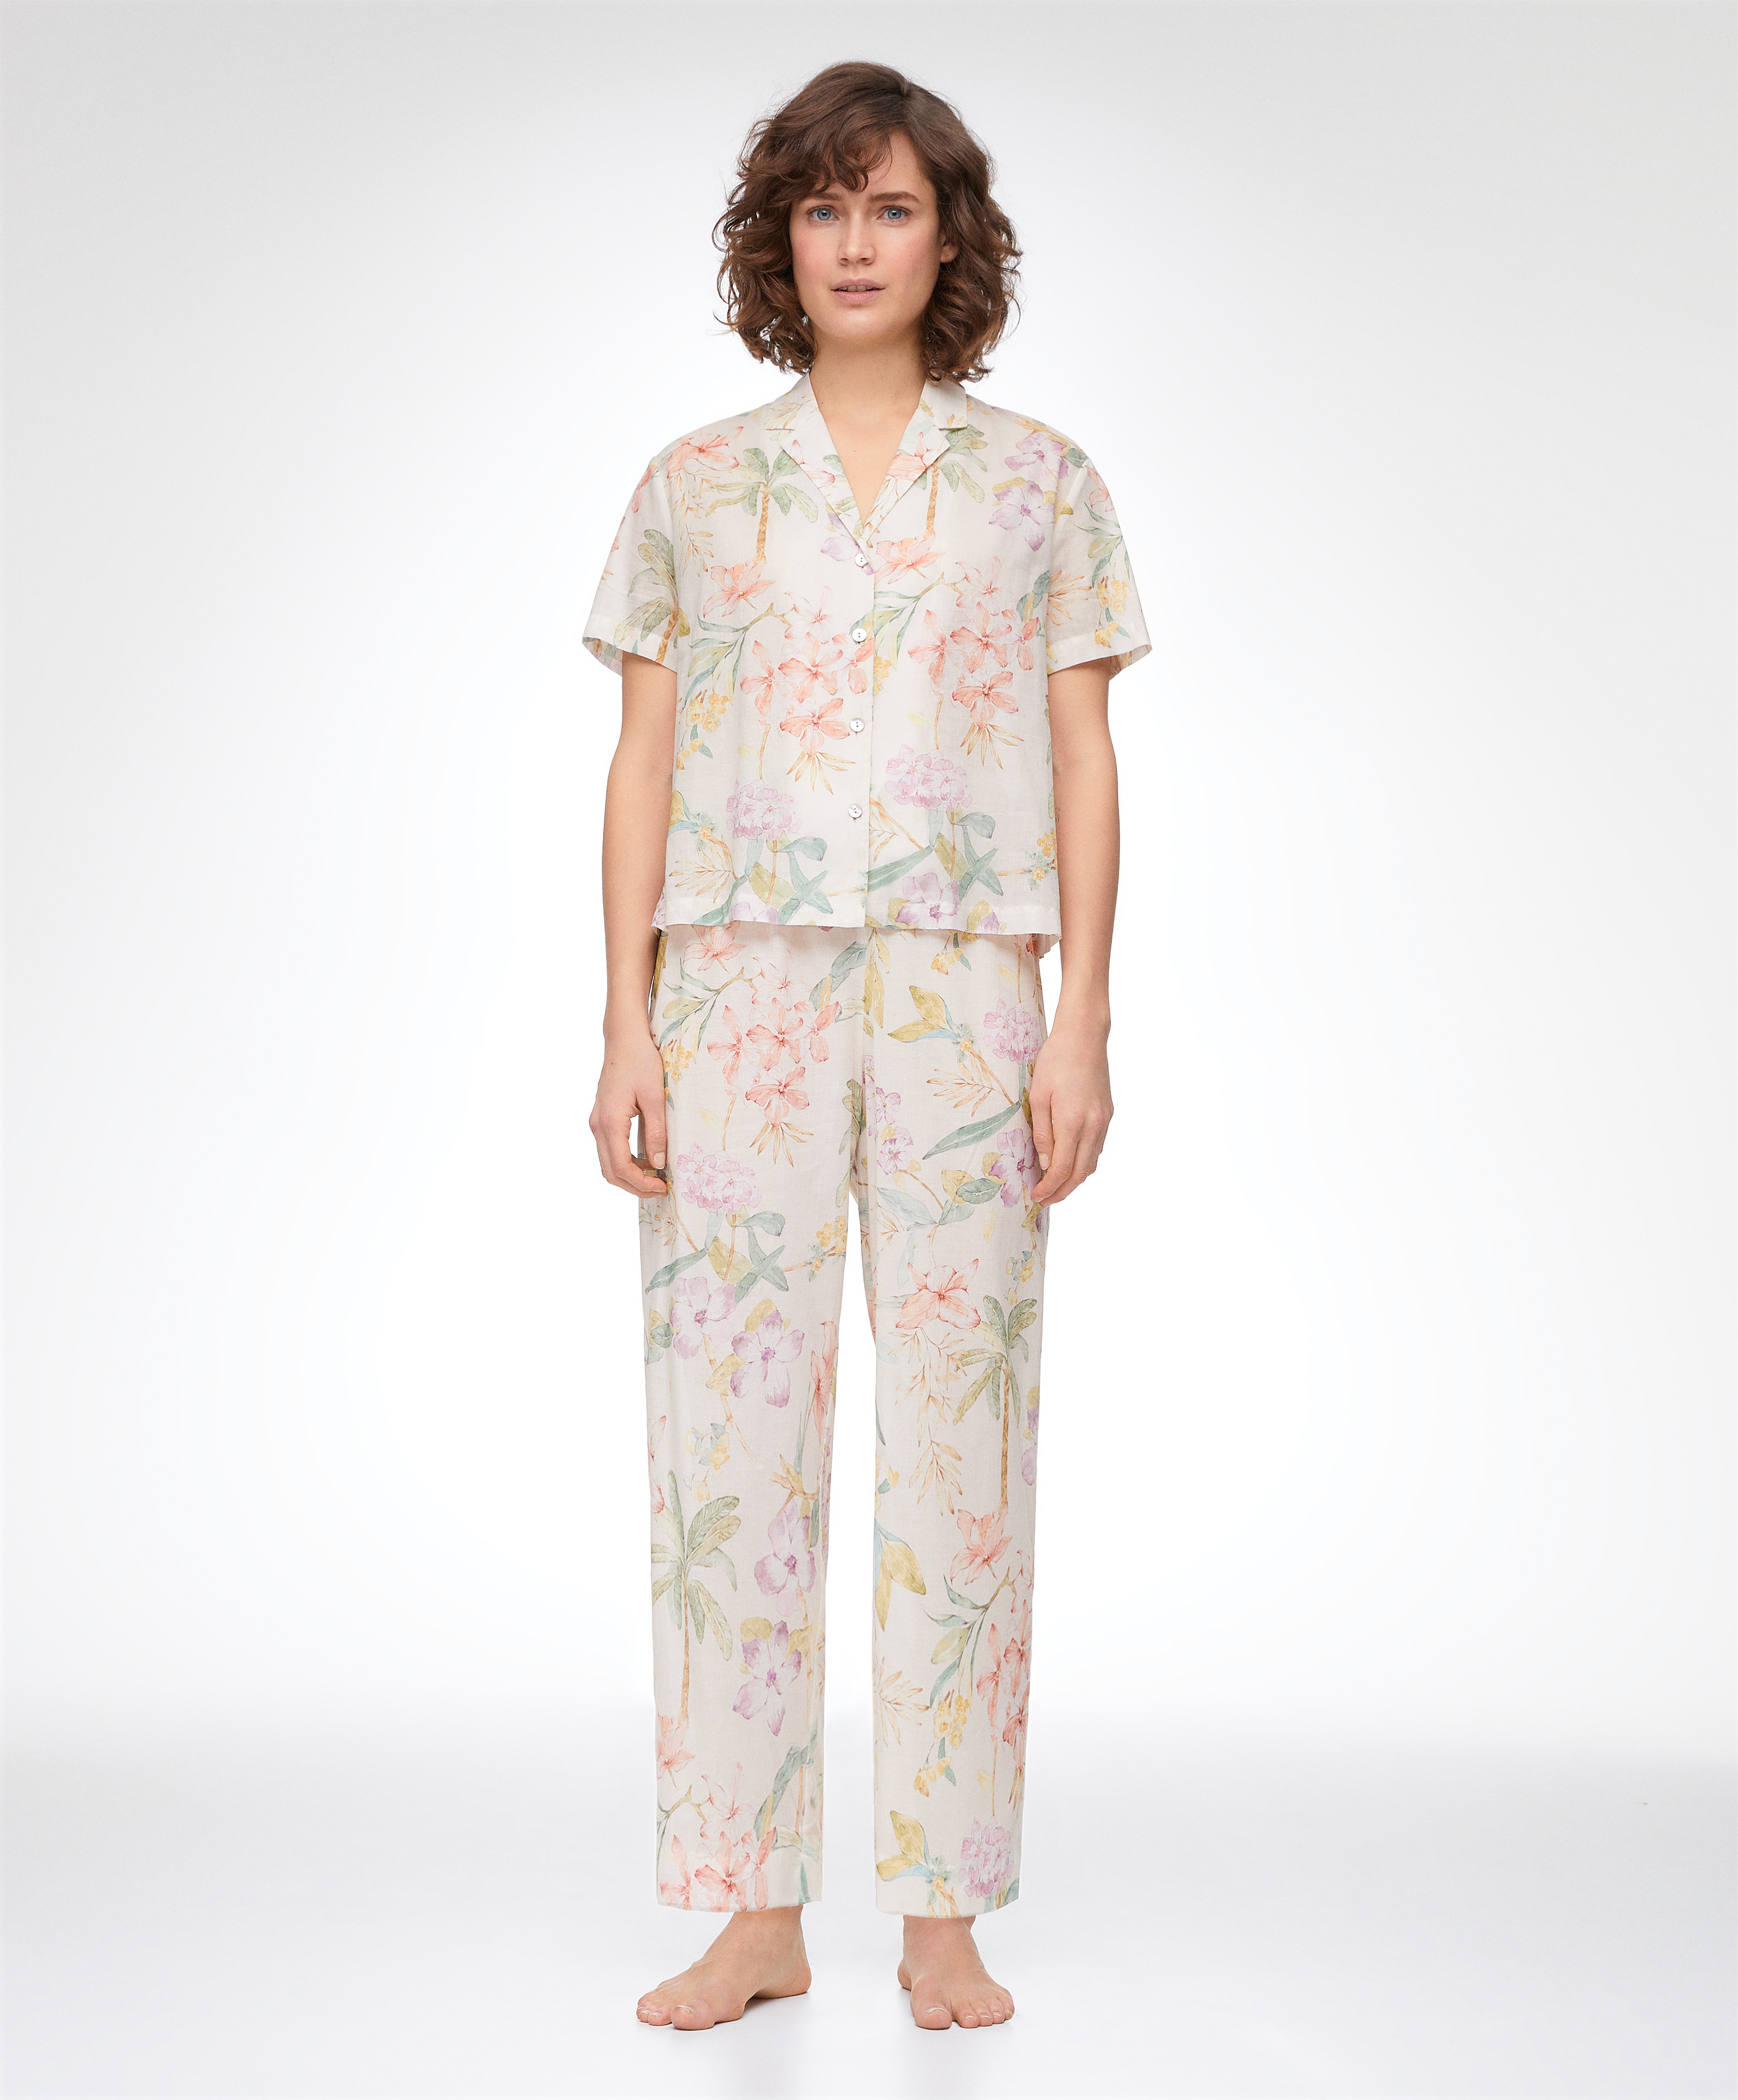 Langer zweiteiliger Pyjama mit Blumenprint